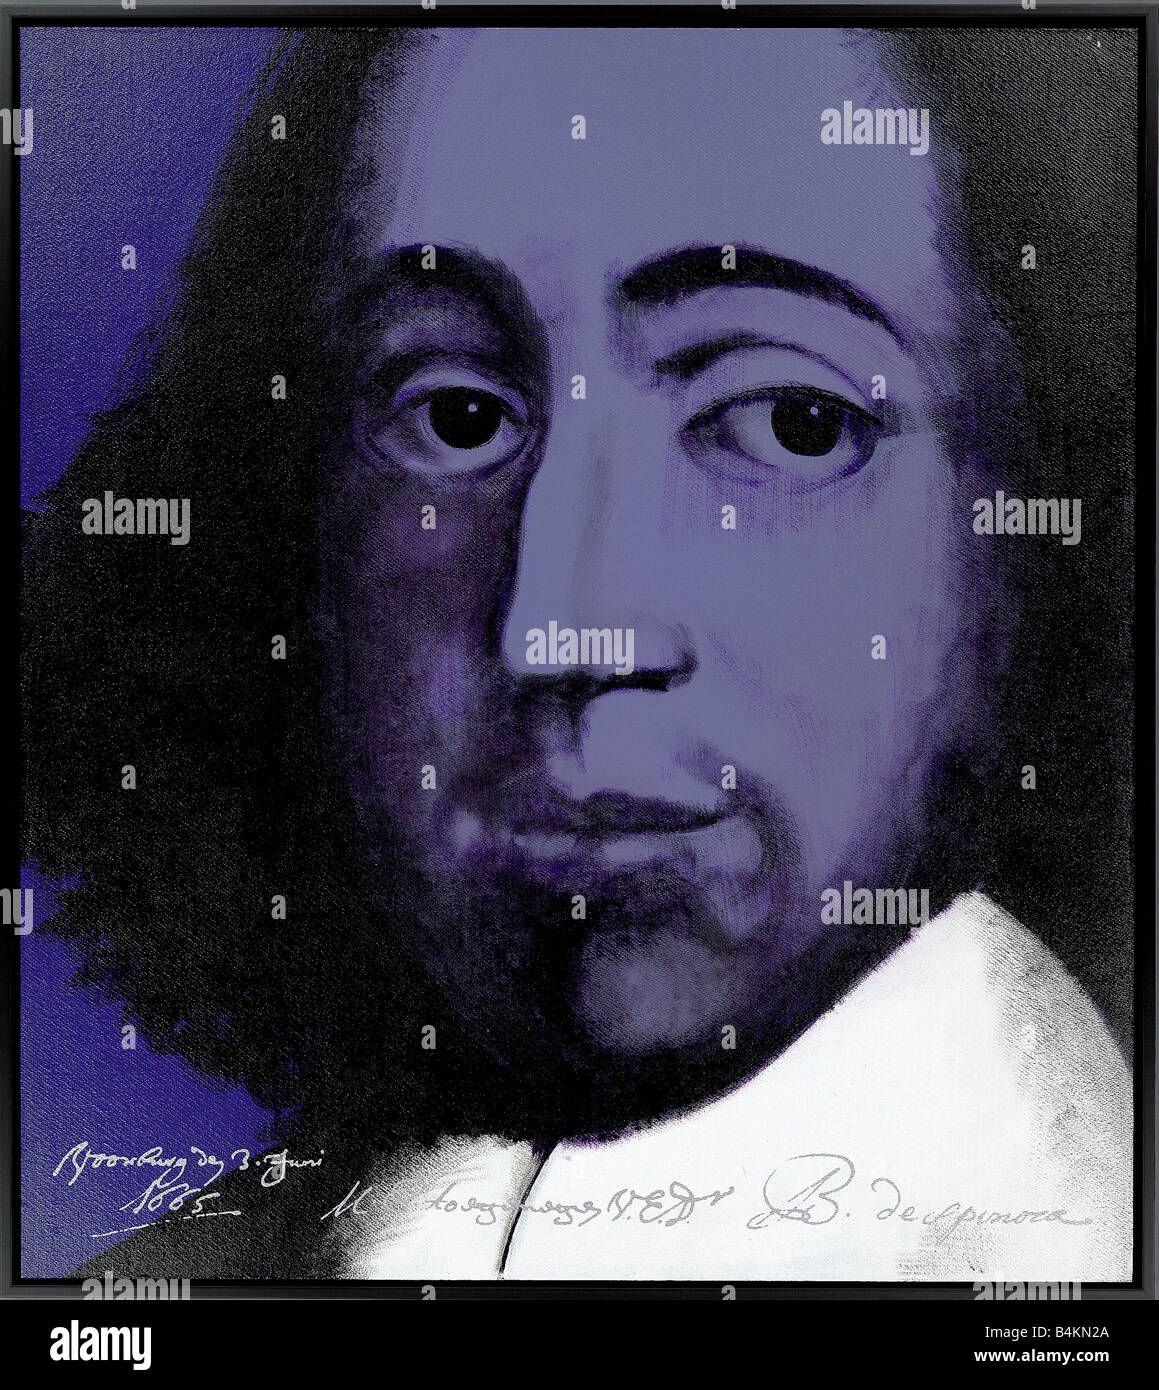 Baruch de Spinoza, 1632-1677, philosophe néerlandais, la peinture à l'écriture et signature originale, faite par nick oudshoorn Banque D'Images